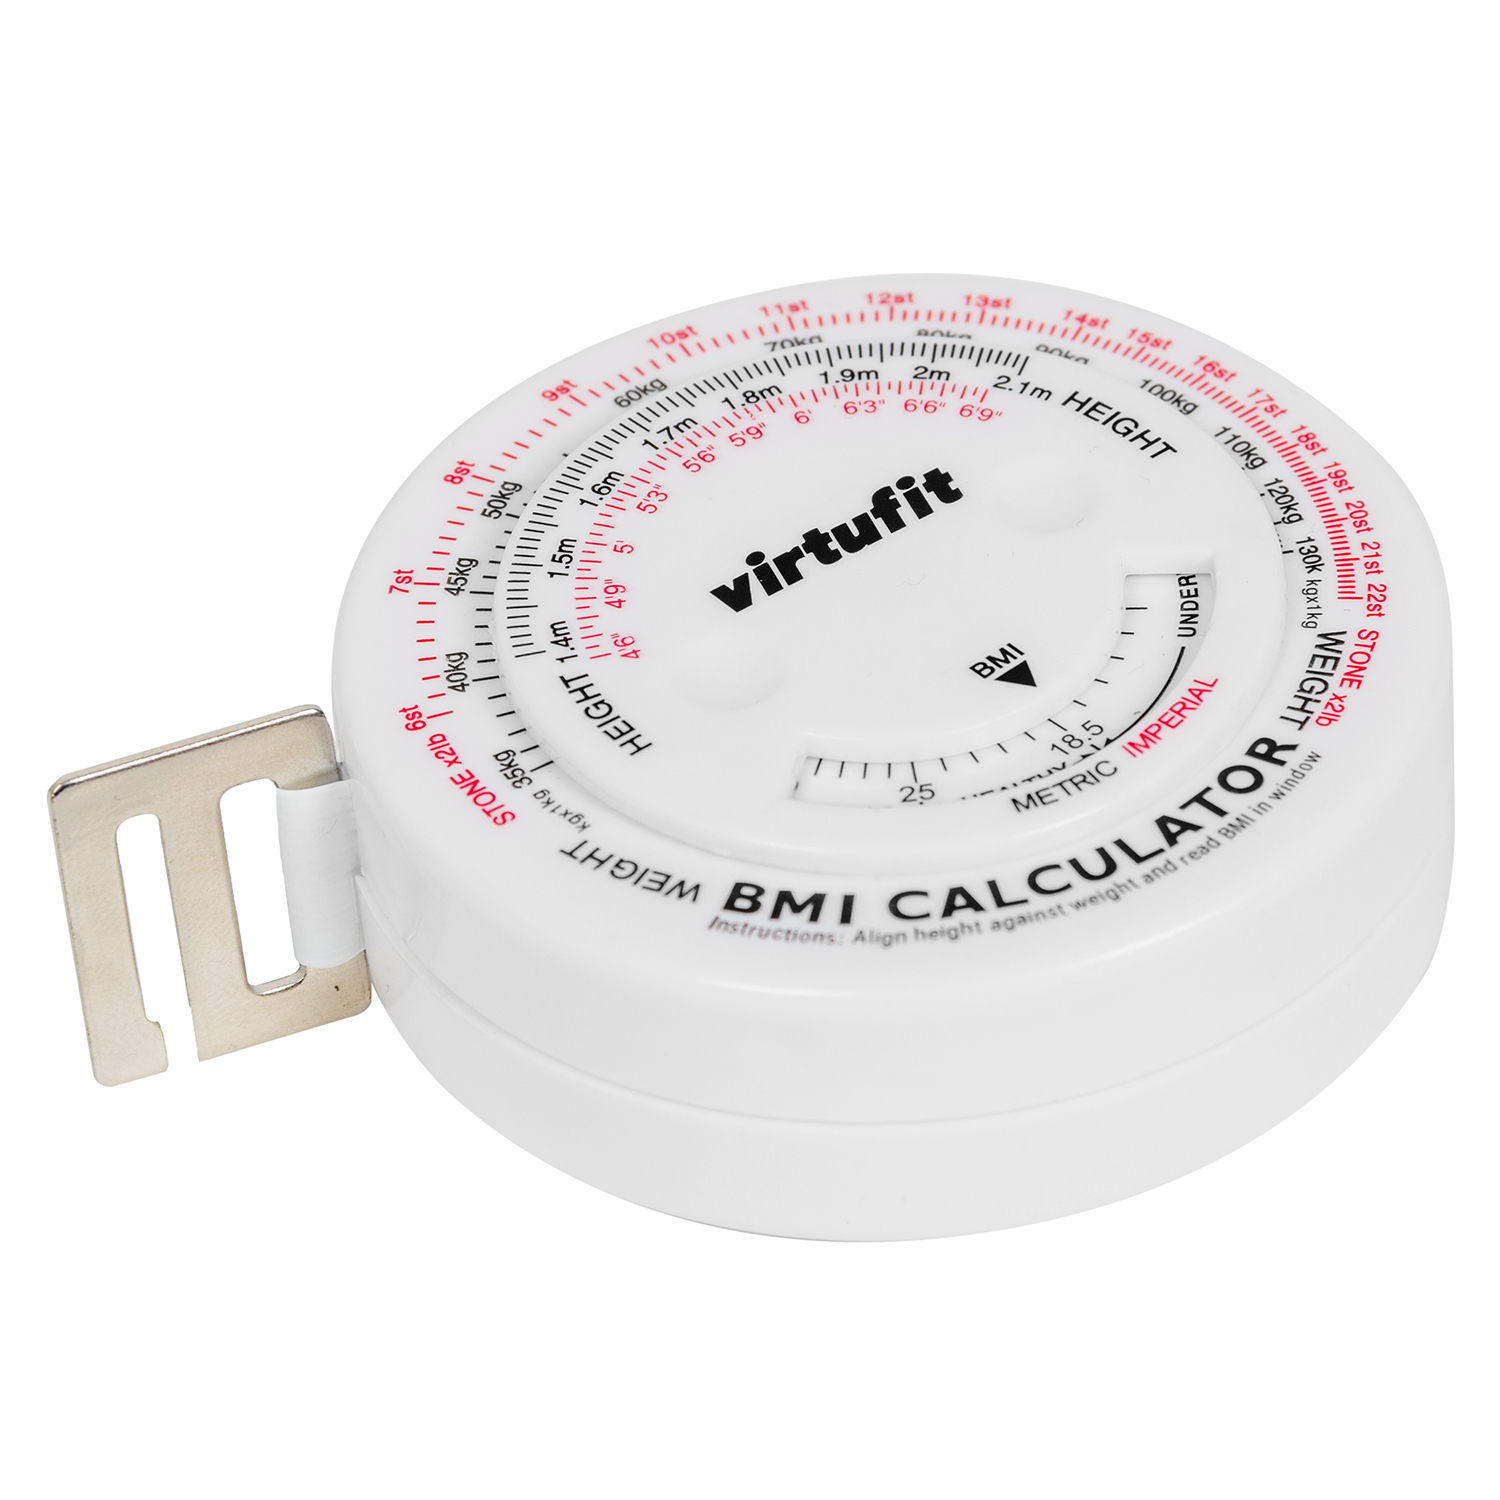 klein Geladen achtergrond VirtuFit Omtrekmeter - Meetlint met BMI Calculator - 150 cm | Fitwinkel.nl